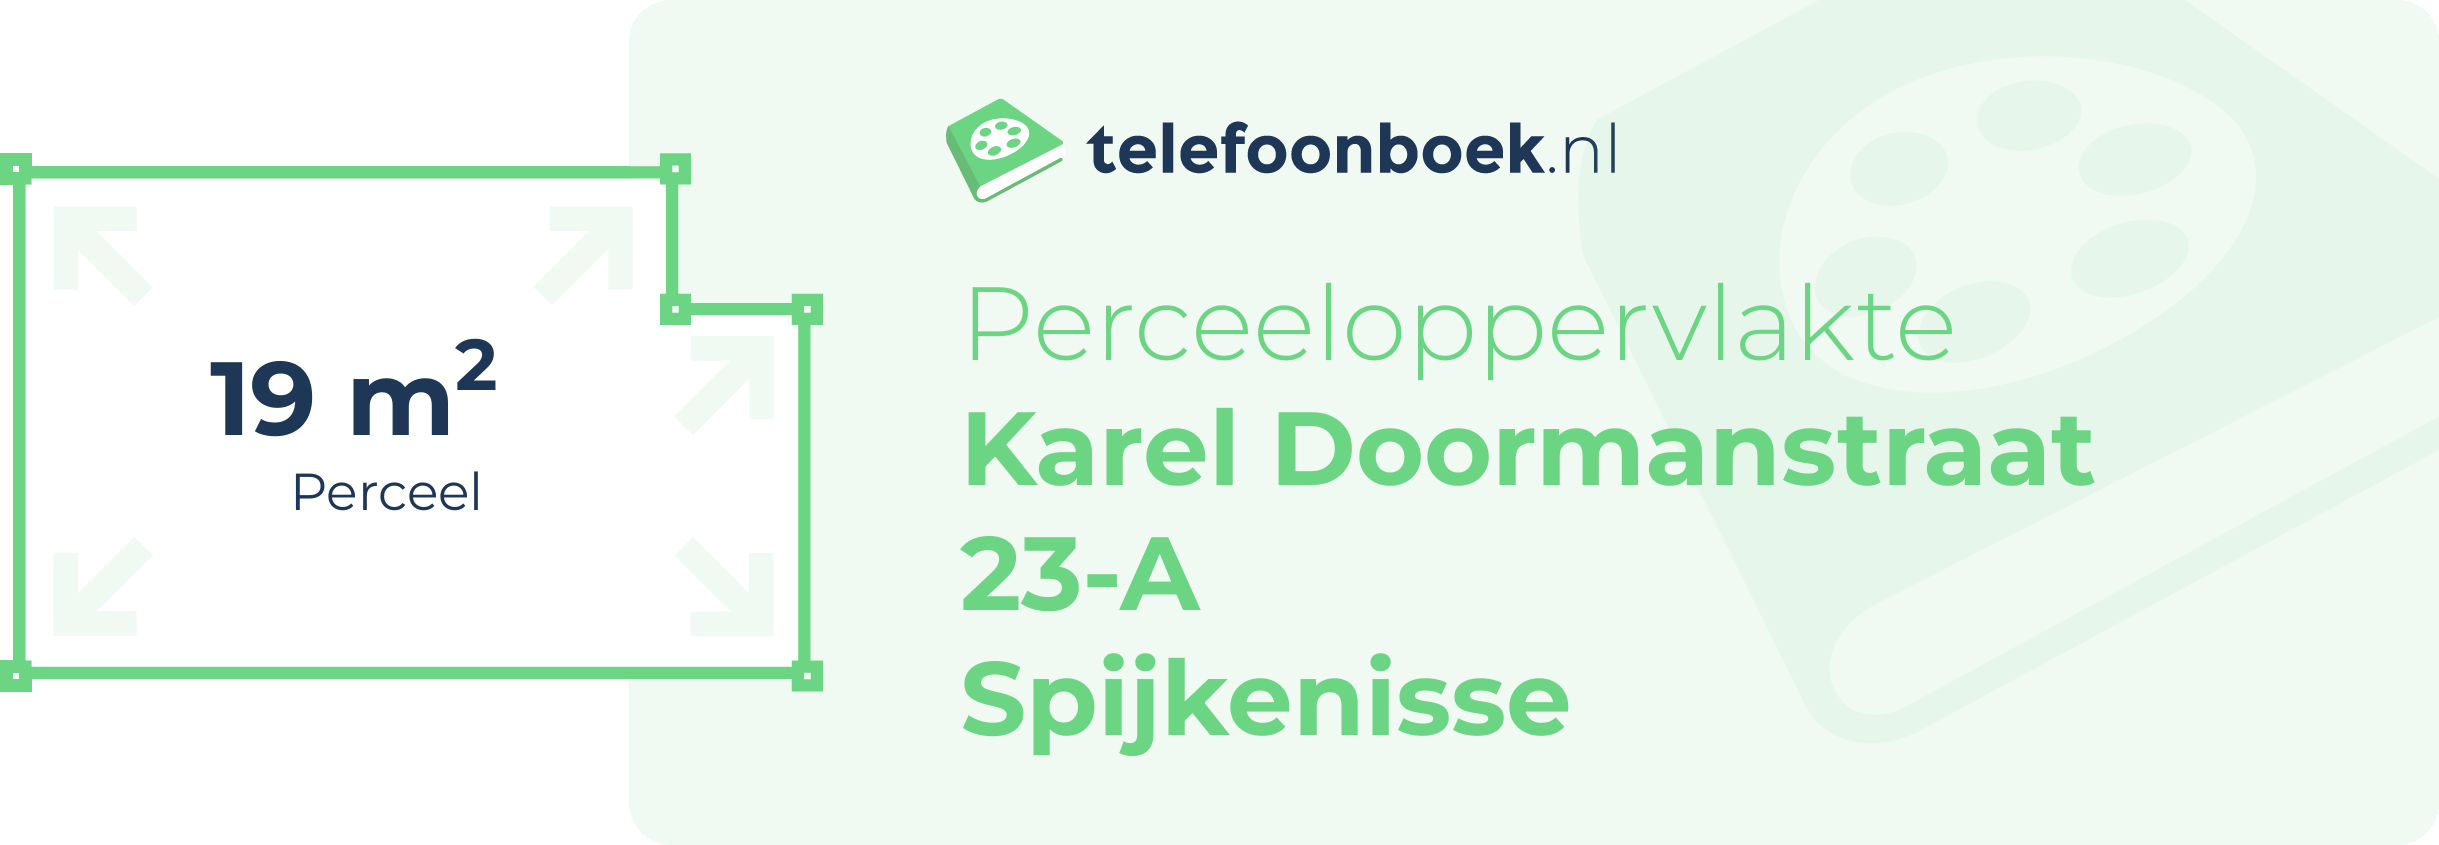 Perceeloppervlakte Karel Doormanstraat 23-A Spijkenisse